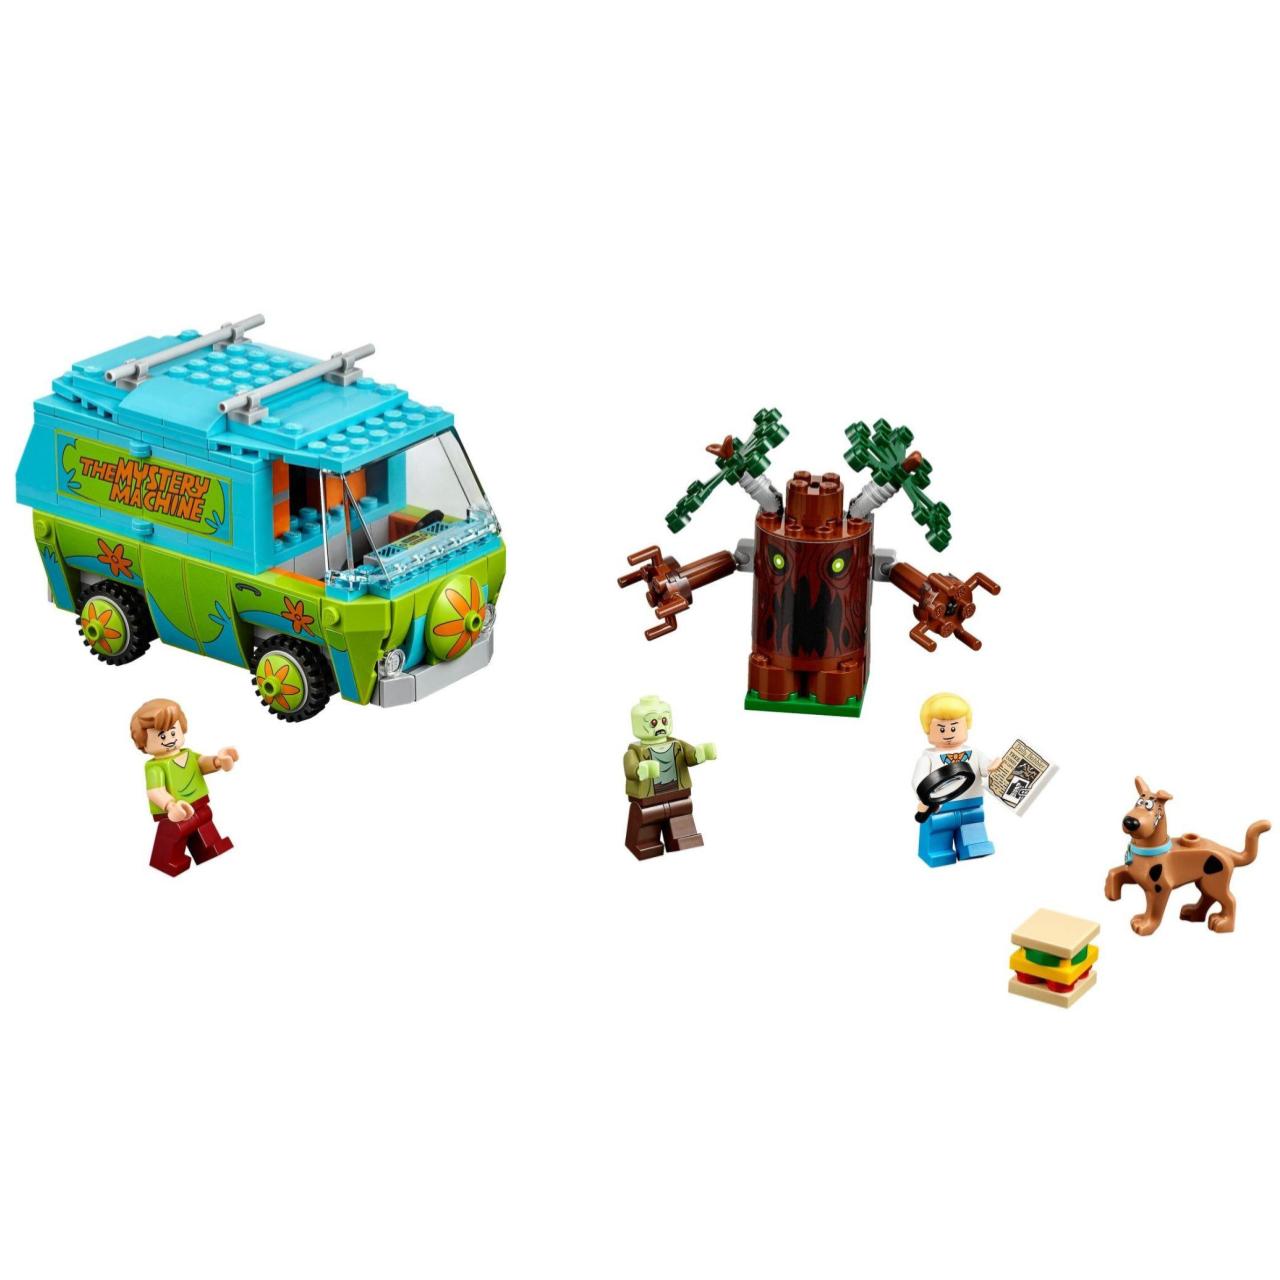 10430 10431 10432 Scooby Doo Building Bricks Blocks modelo de juguete 